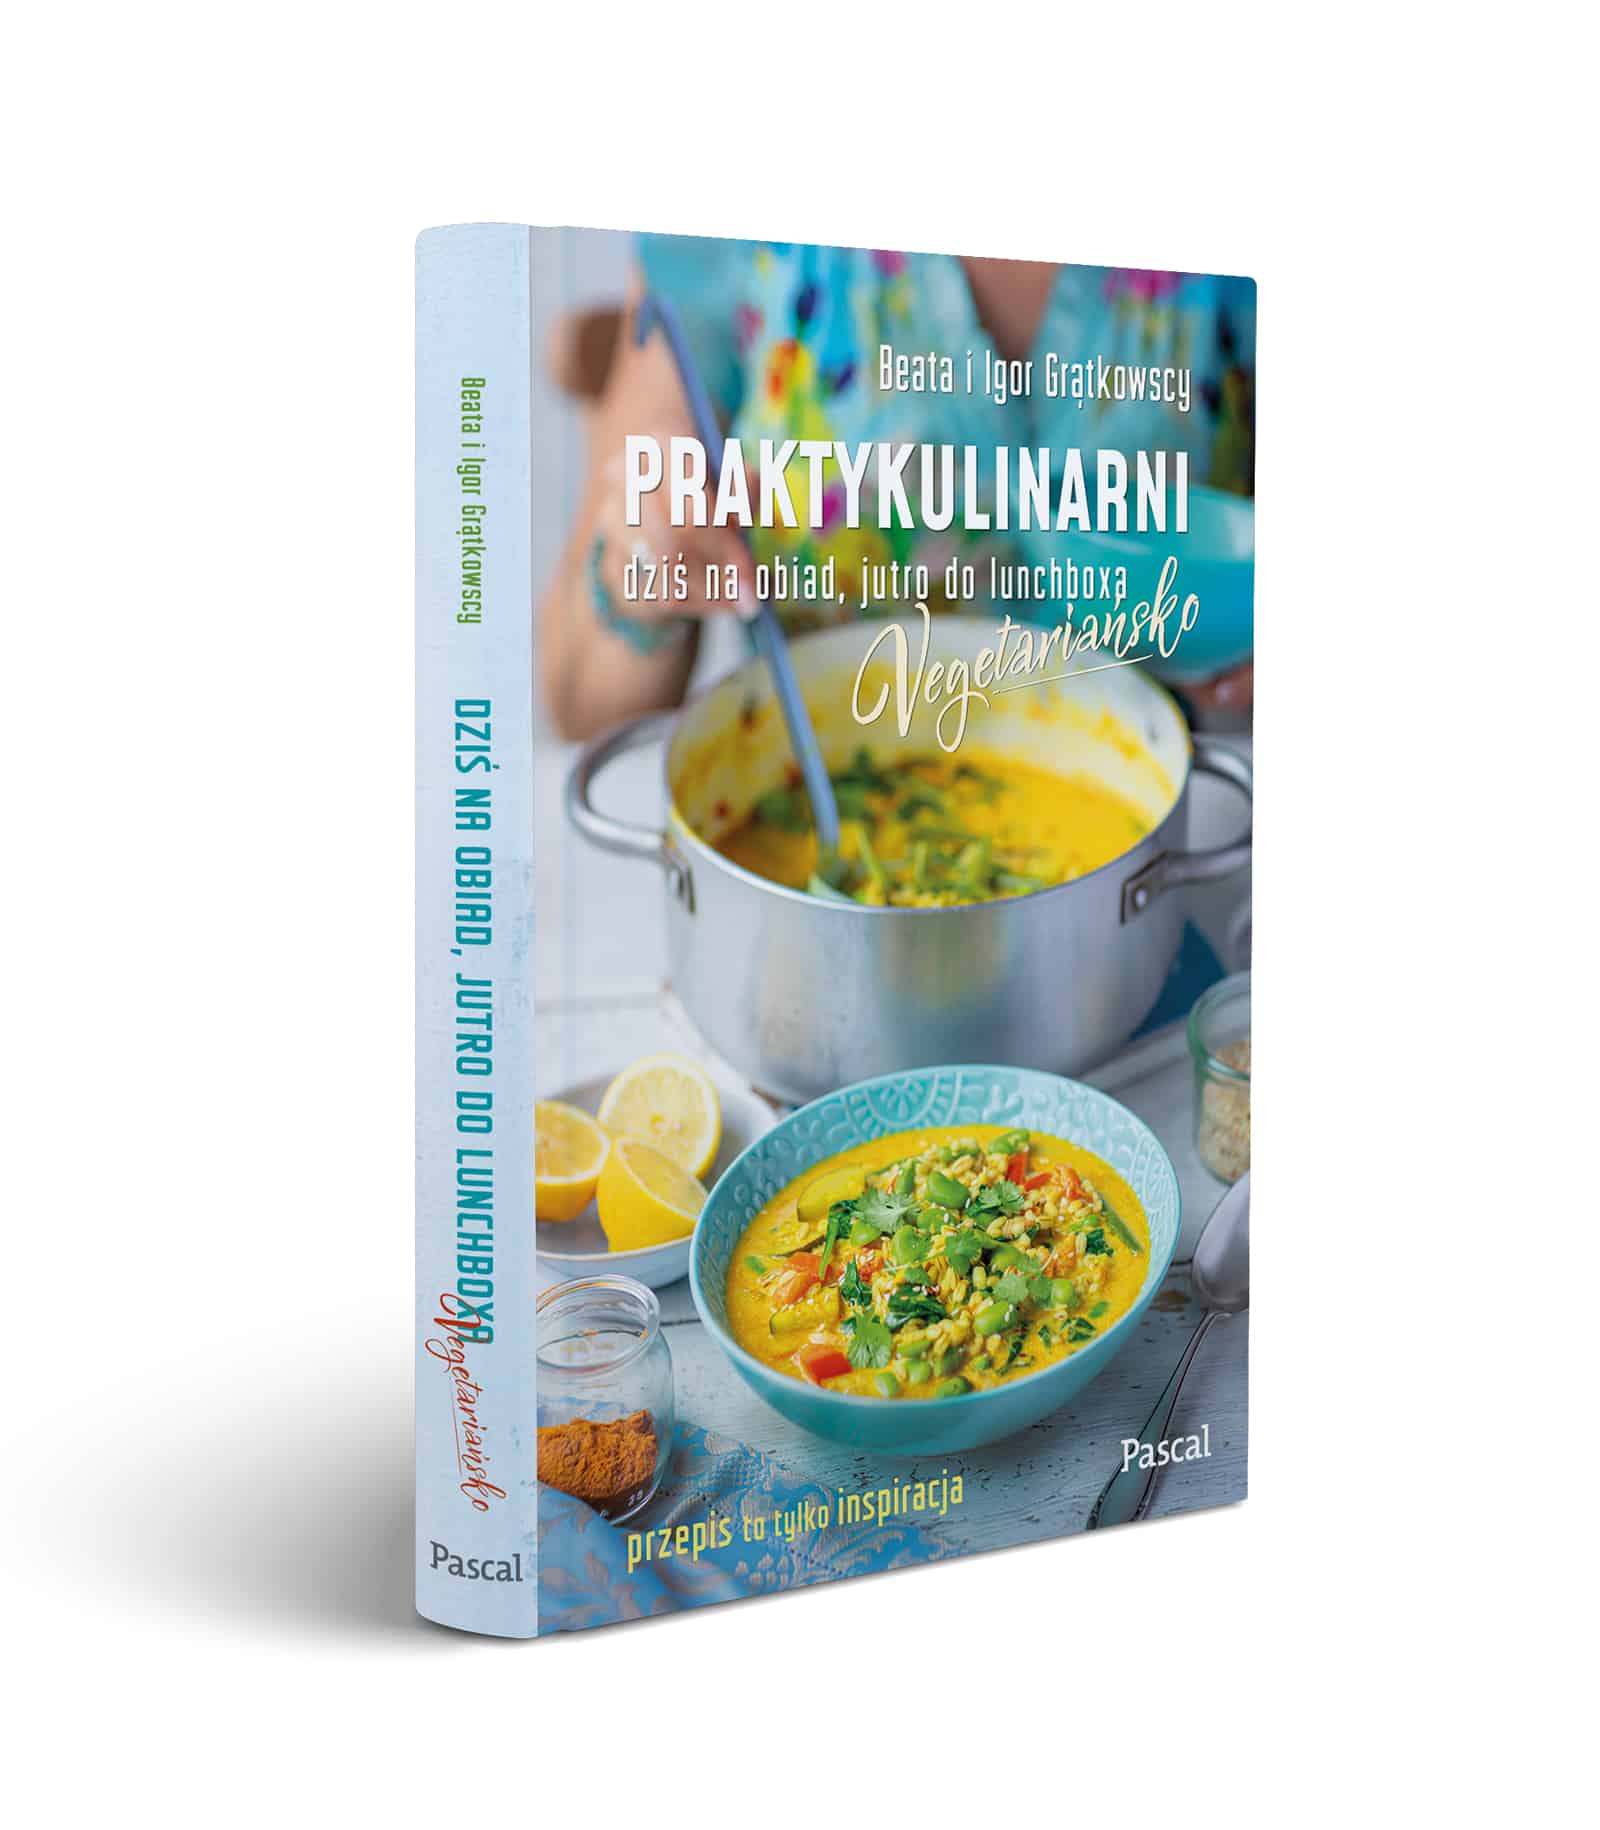 Praktykulinarni Vegetariańsko - kilka słów o naszej książce praktykulinarni vegetariansko okladka